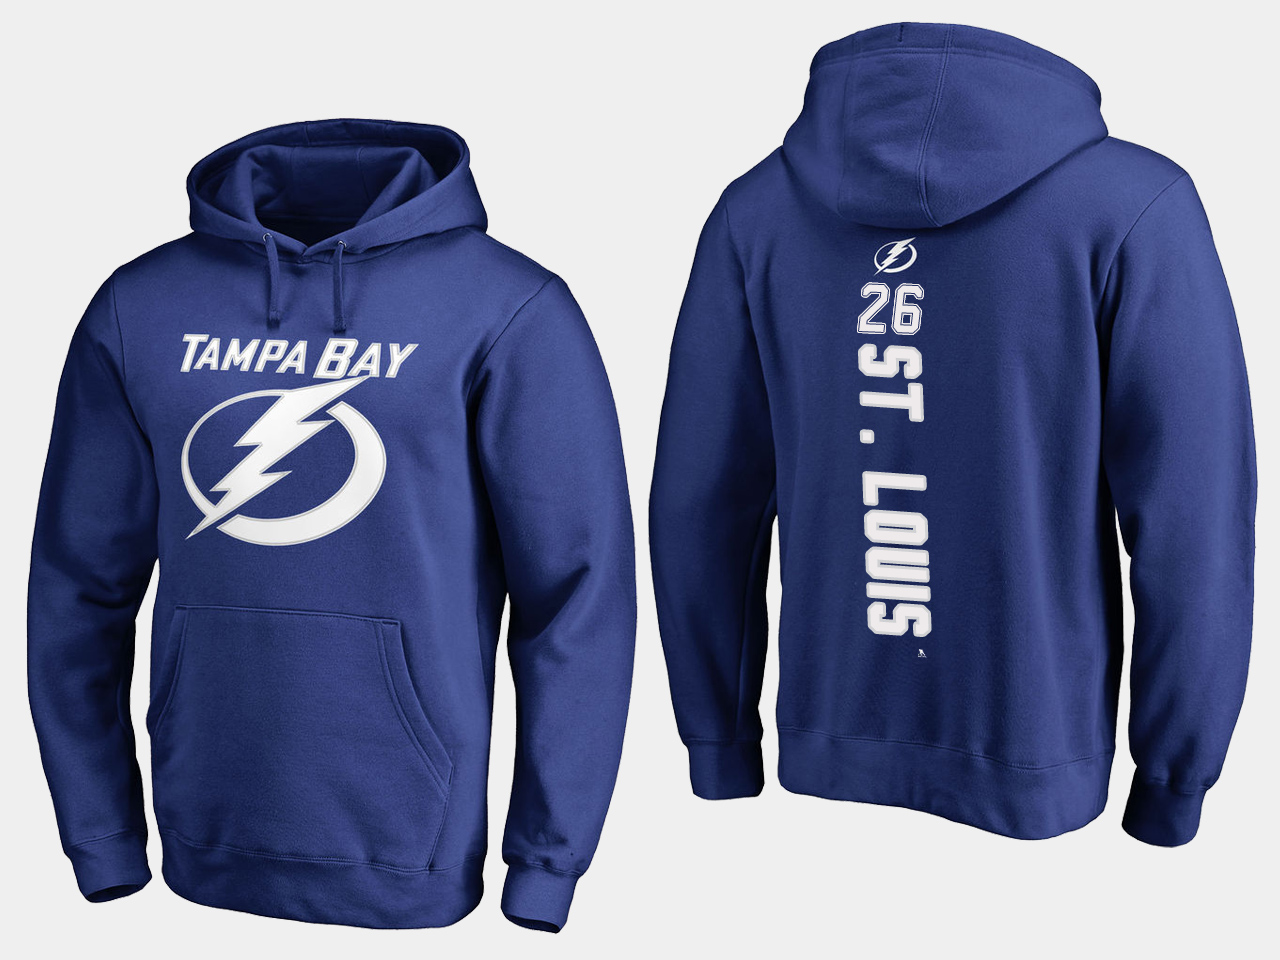 NHL Men adidas Tampa Bay Lightning 26 St Louis blue hoodie